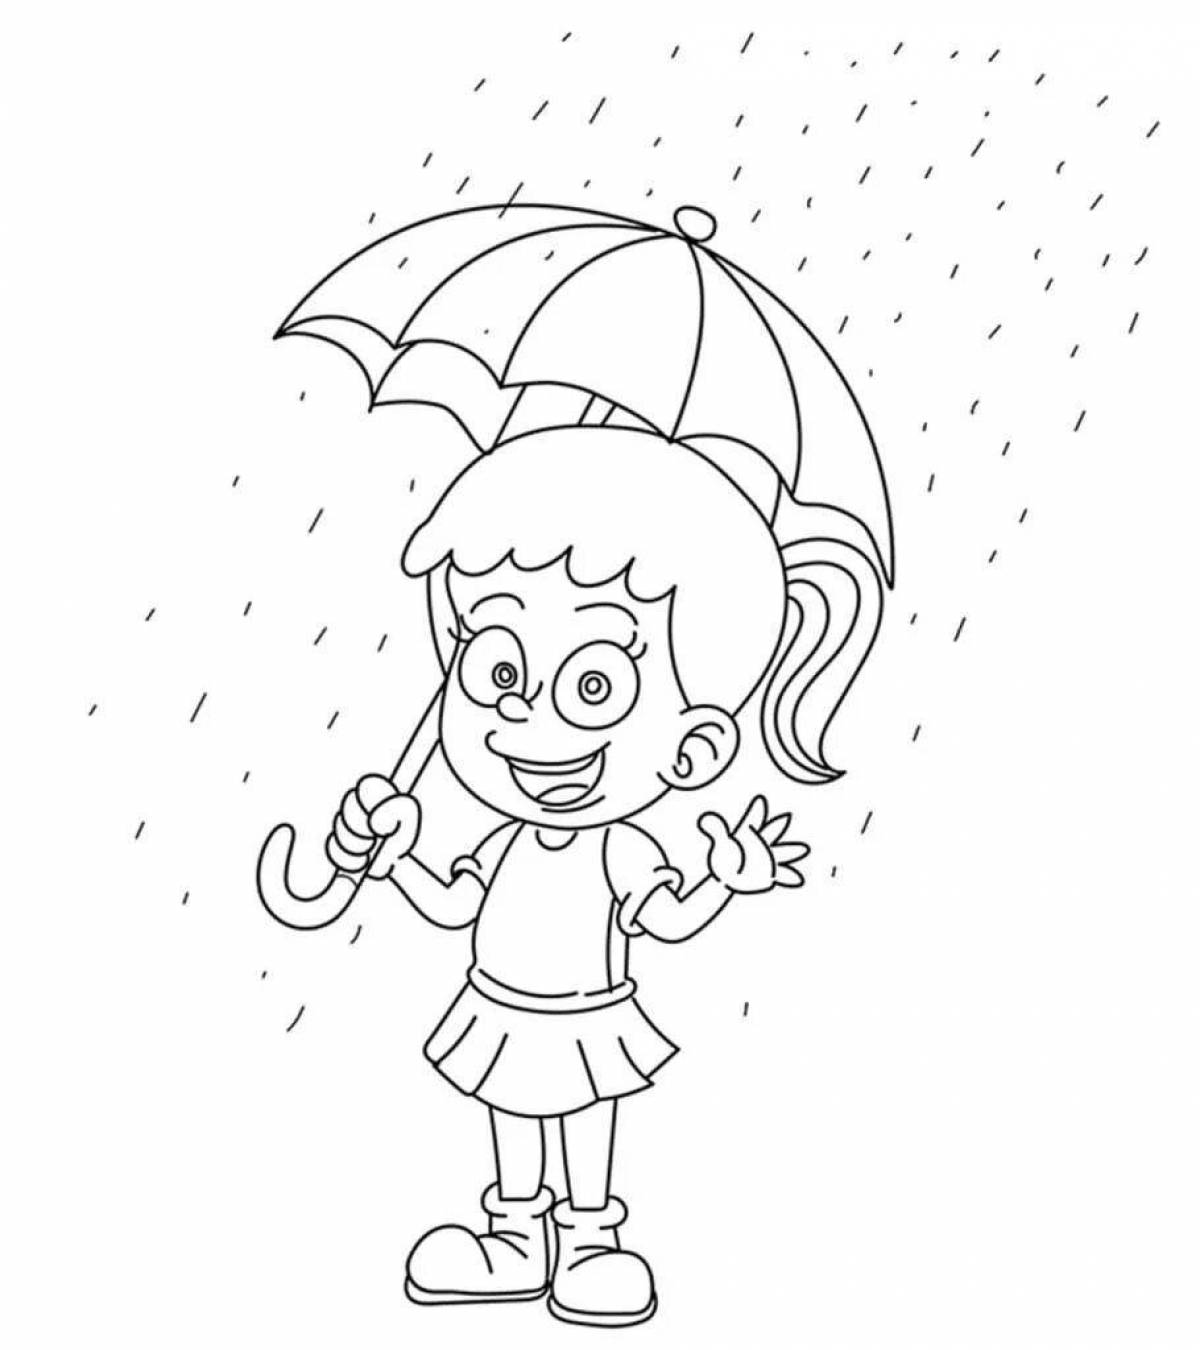 Rain splash coloring book for kids